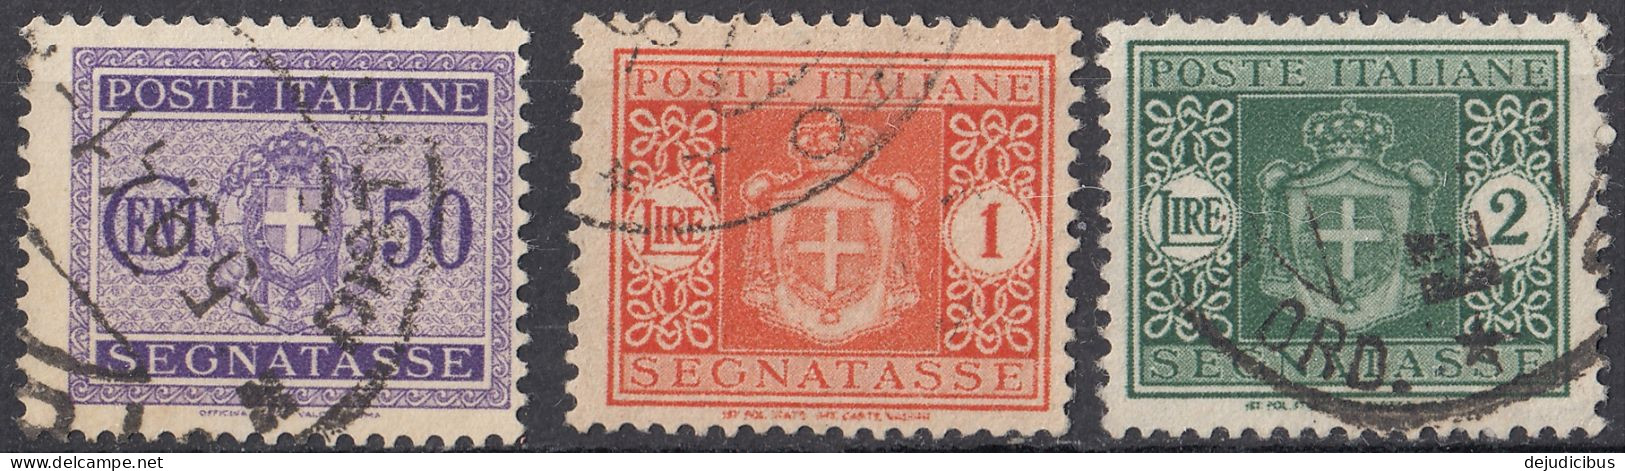 ITALIA - 1934 - Segnatasse -  Lotto Di 3 Valori Usati: Yvert  34, 36 E 37. - Taxe